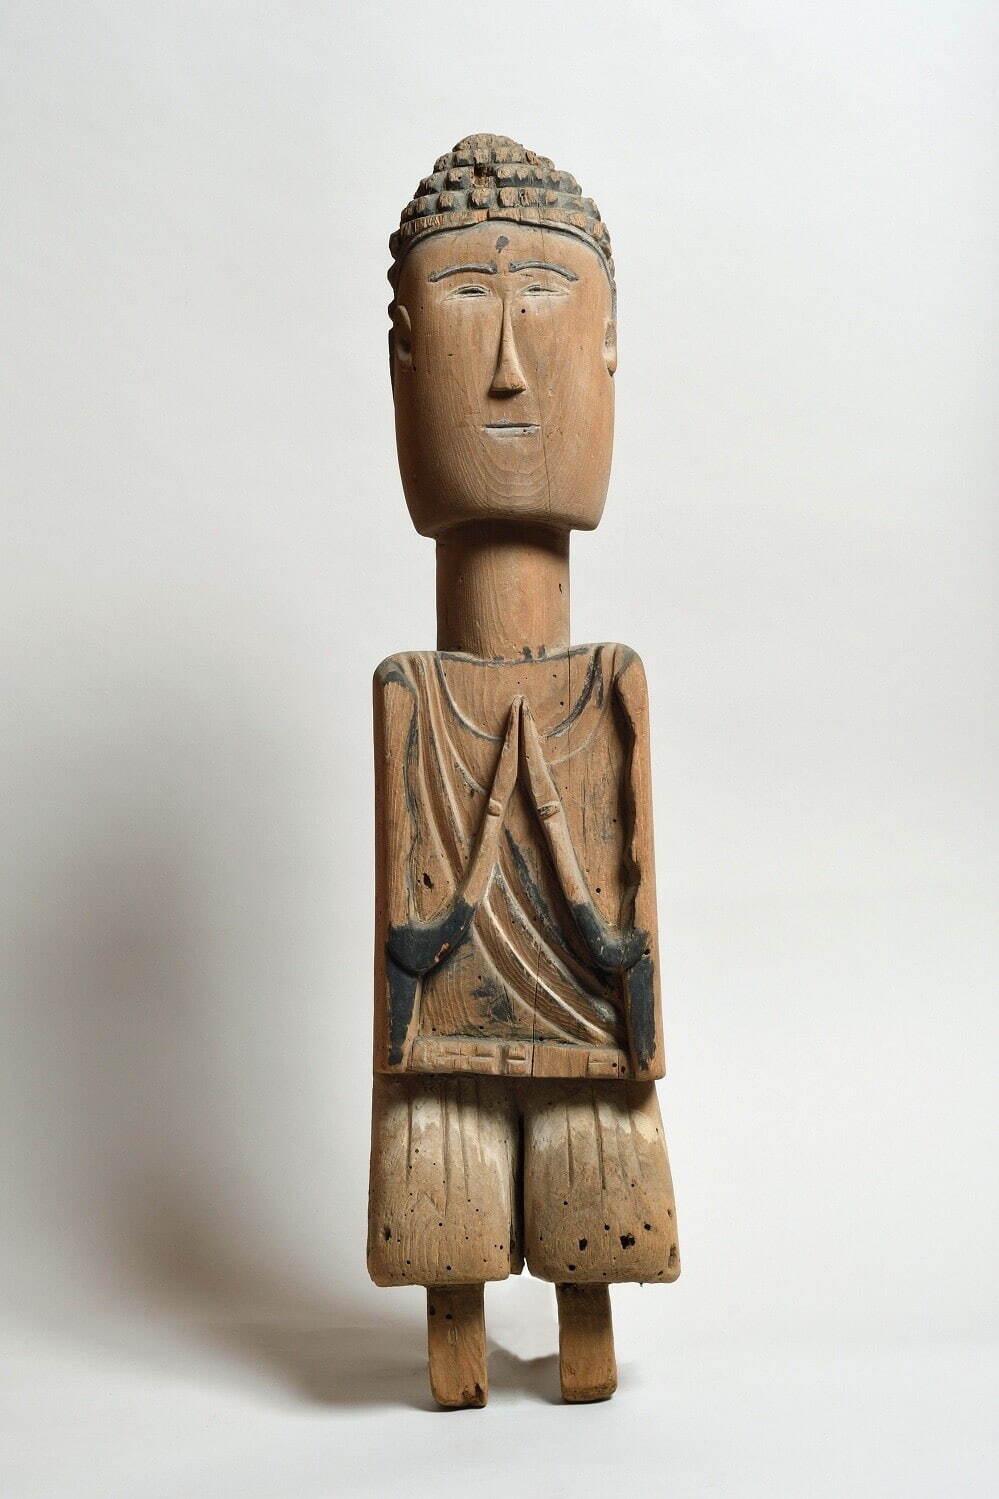 展覧会「みちのく いとしい仏たち」京都・龍谷ミュージアムで - 東北に伝わる素朴な仏像・神像を紹介 - ファッションプレス